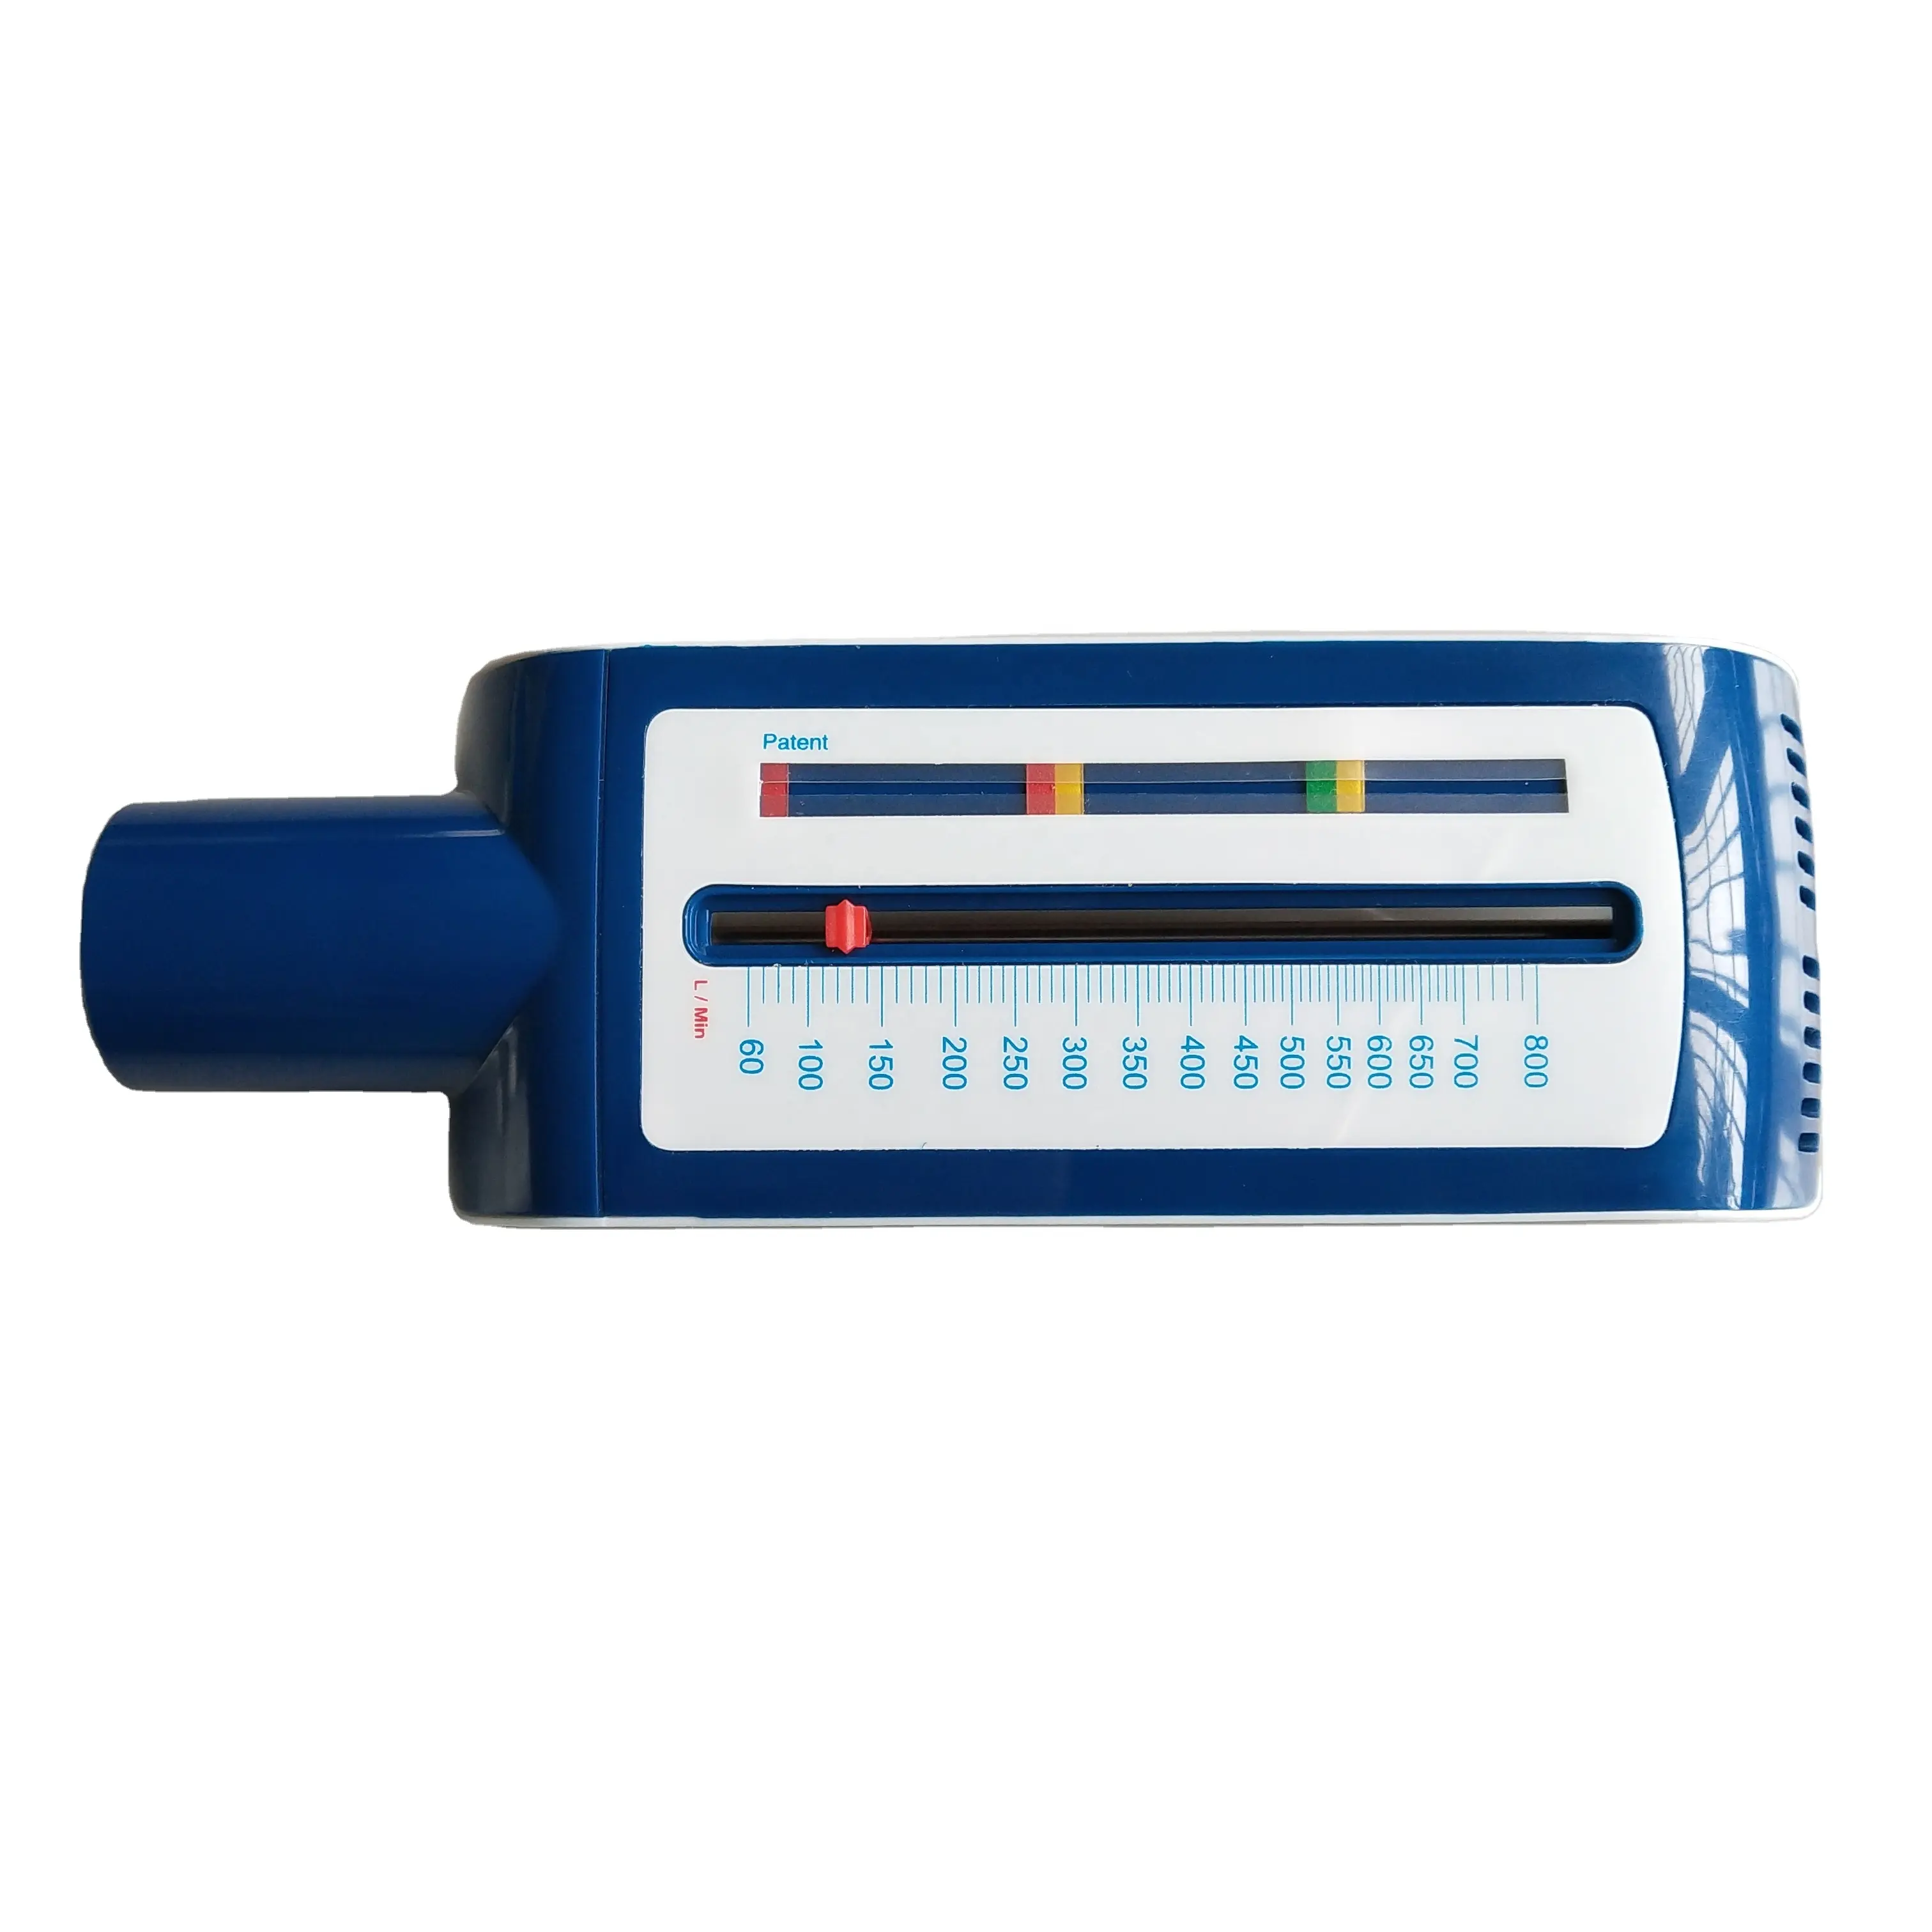 Medidor de flujo máximo de plástico para adultos, productos médicos de China, diseño de color azul